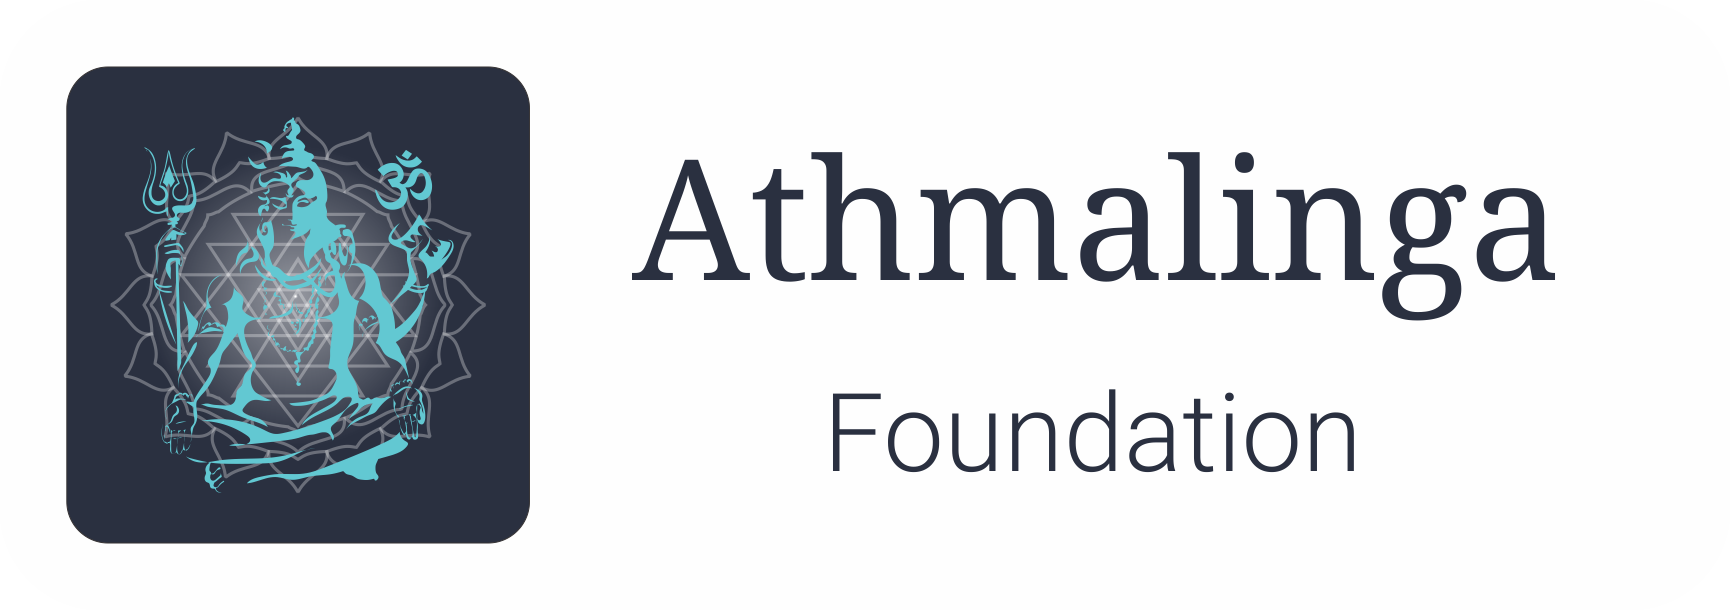 Athmalinga Foundation